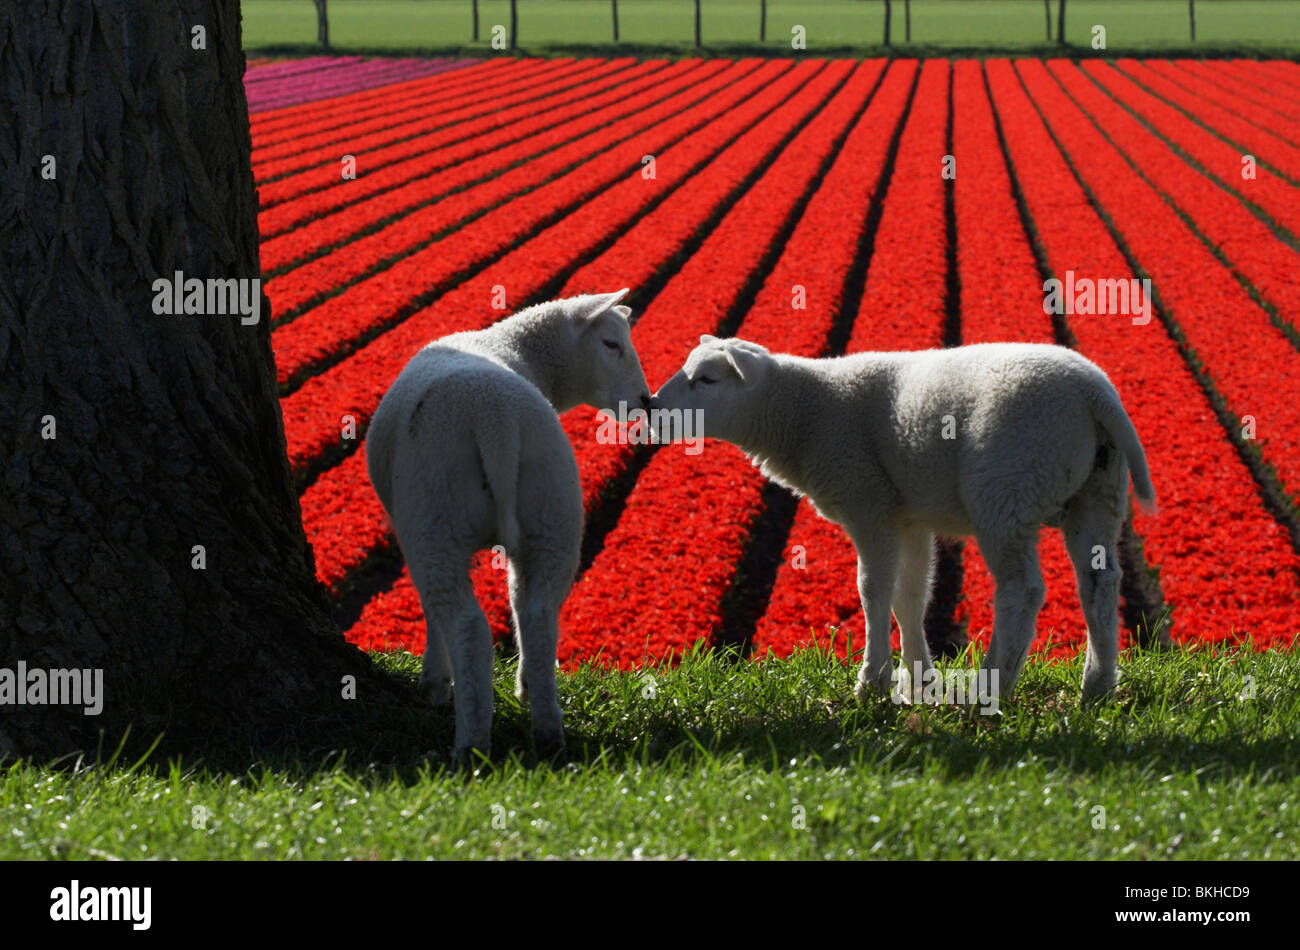 Lammetjes met tulpenveld; Lambs with tulip field Stock Photo